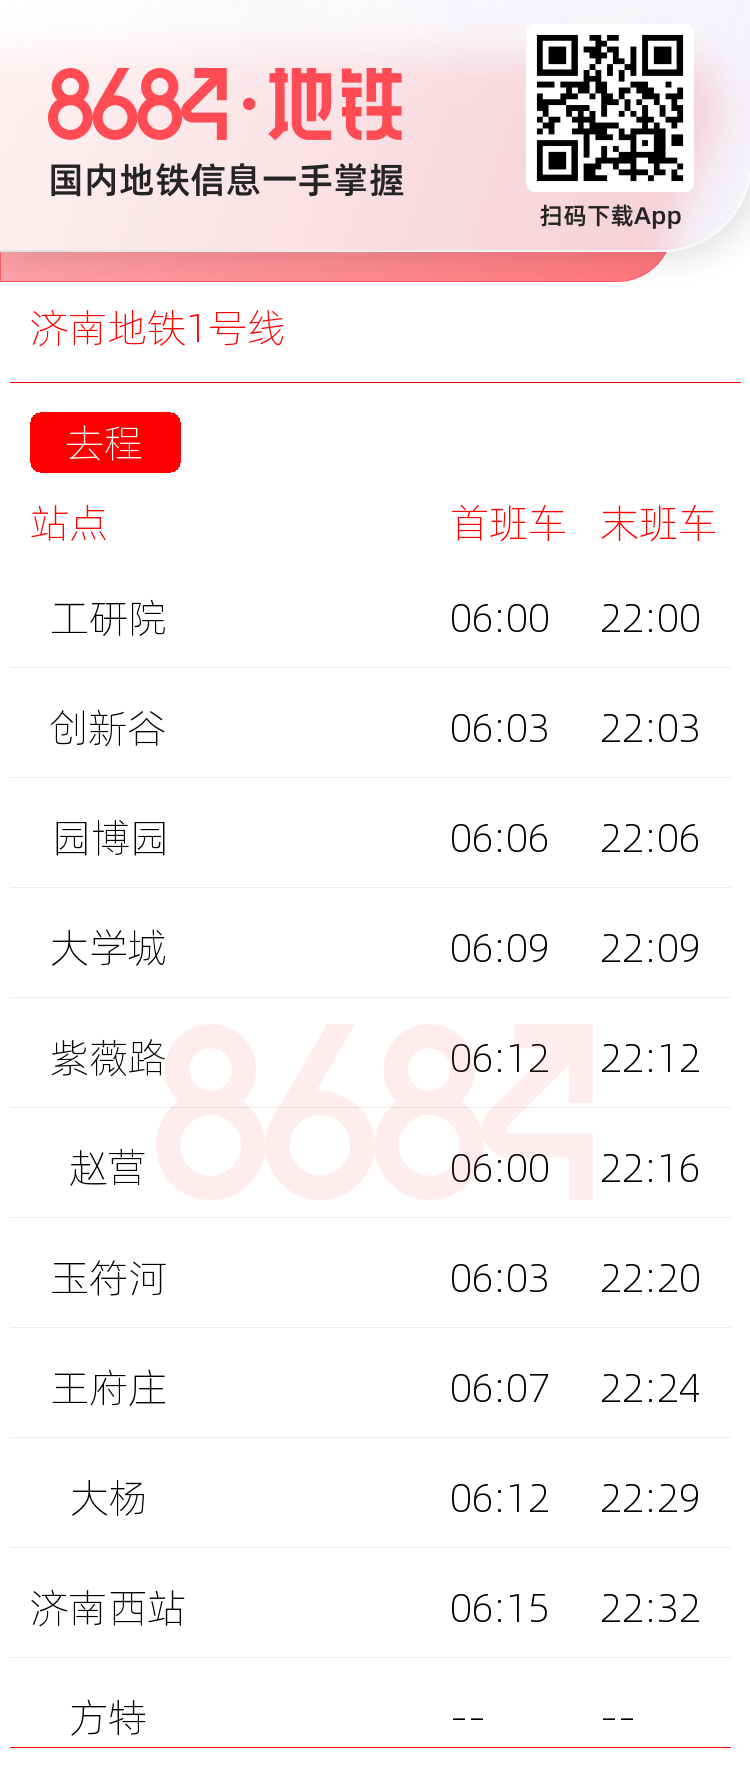 济南地铁1号线运营时间表